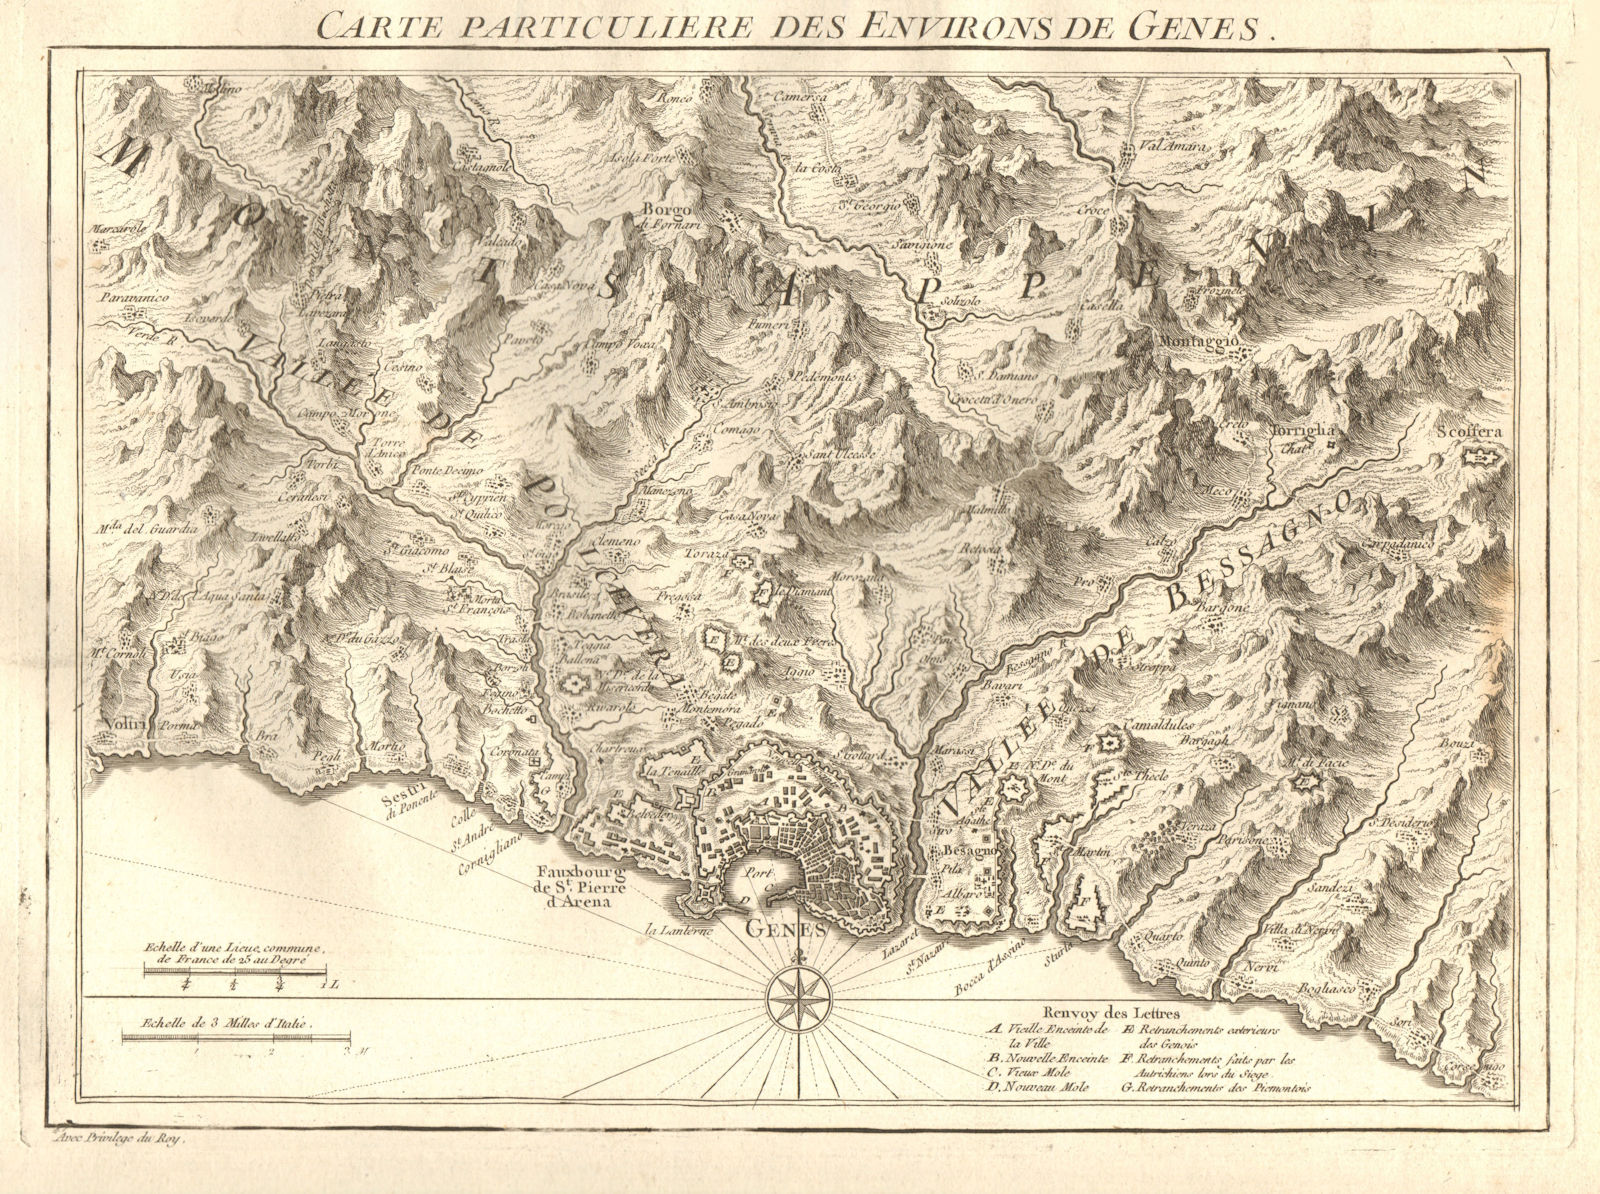 'Carte particuliere des environs de Genes'. Genoa environs. D'ANVILLE 1754 map